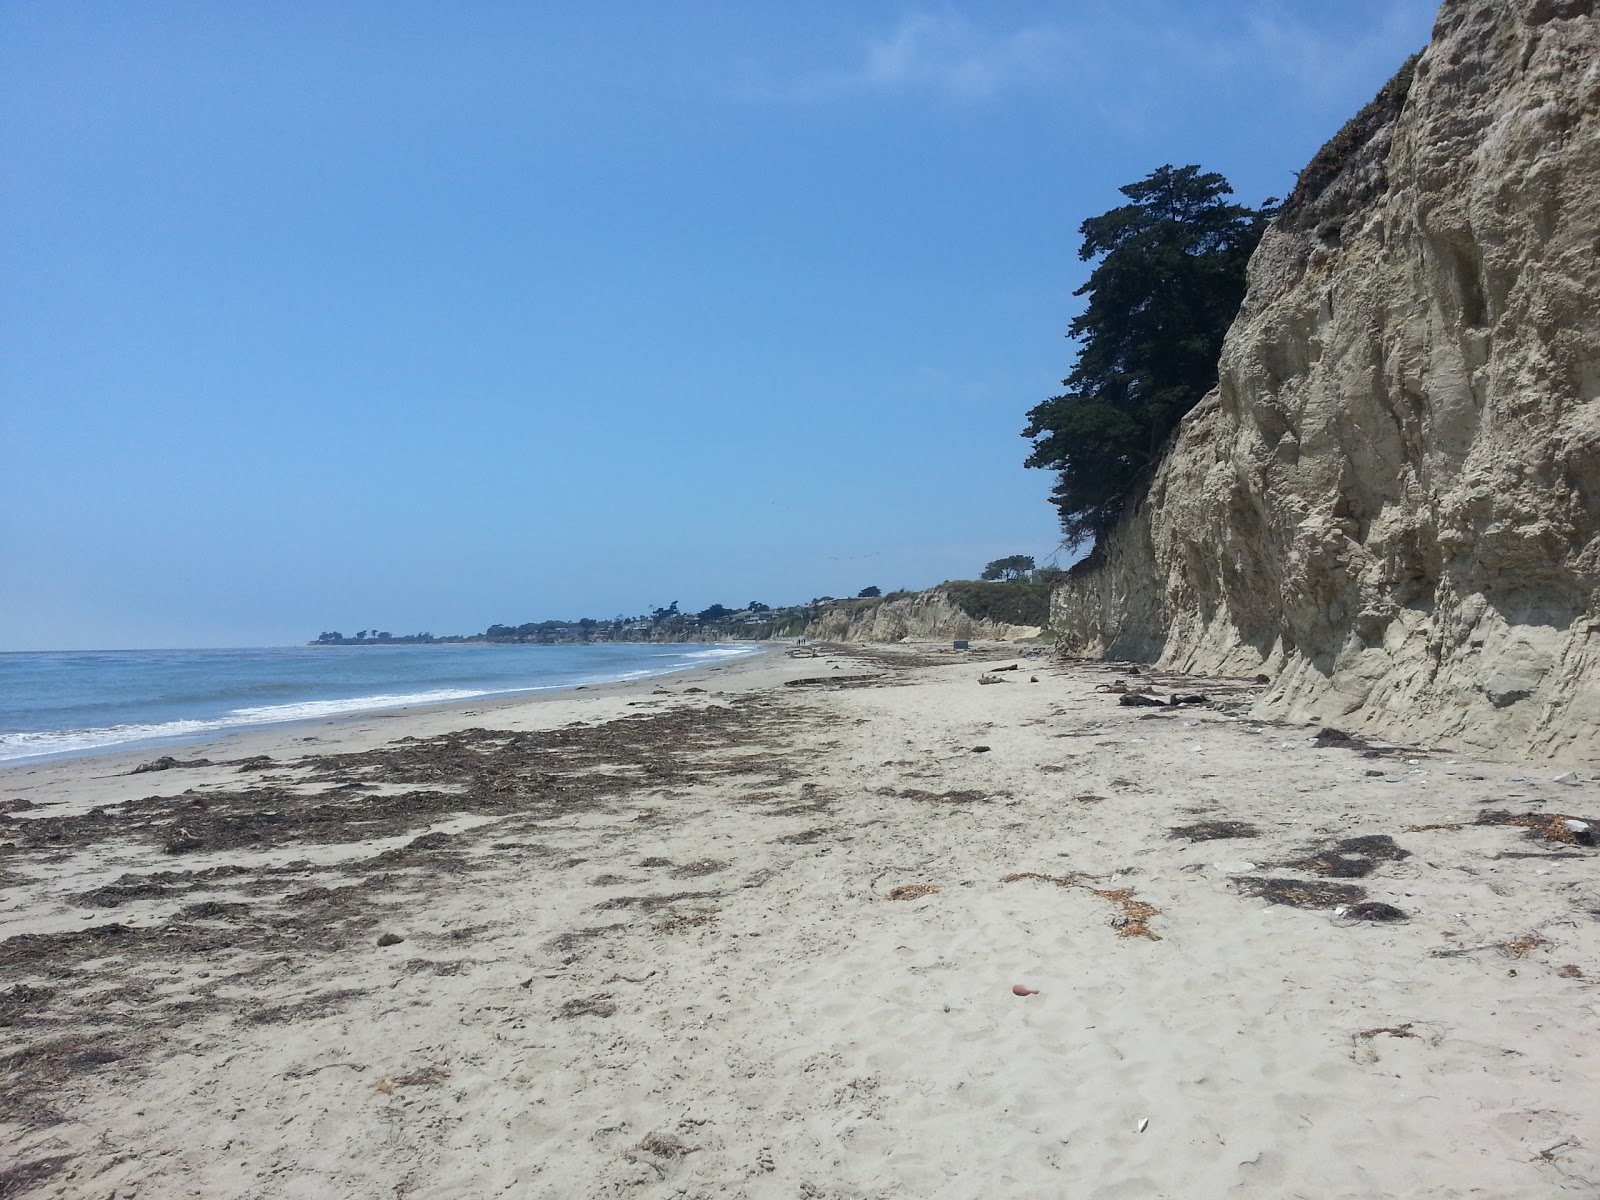 Zdjęcie Depressions Beach IVKC z powierzchnią jasny piasek